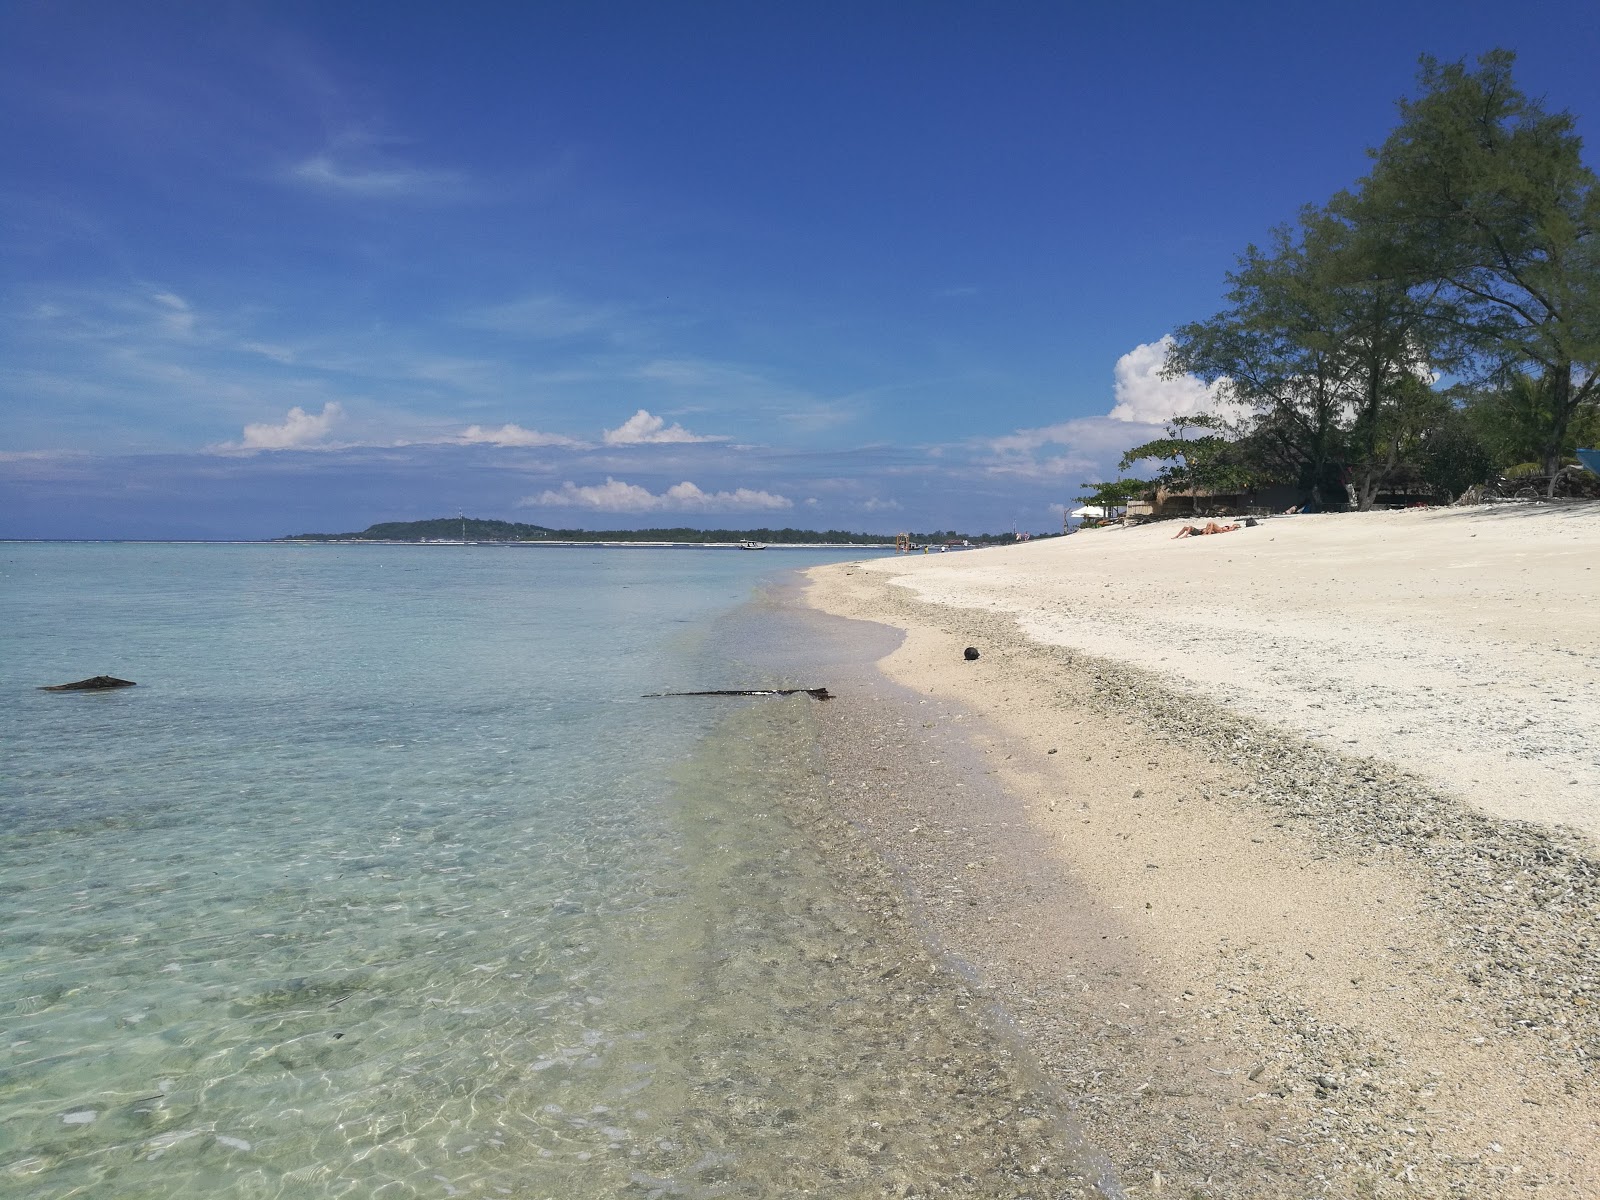 Foto de Gili Air Lumbung Beach - lugar popular entre los conocedores del relax